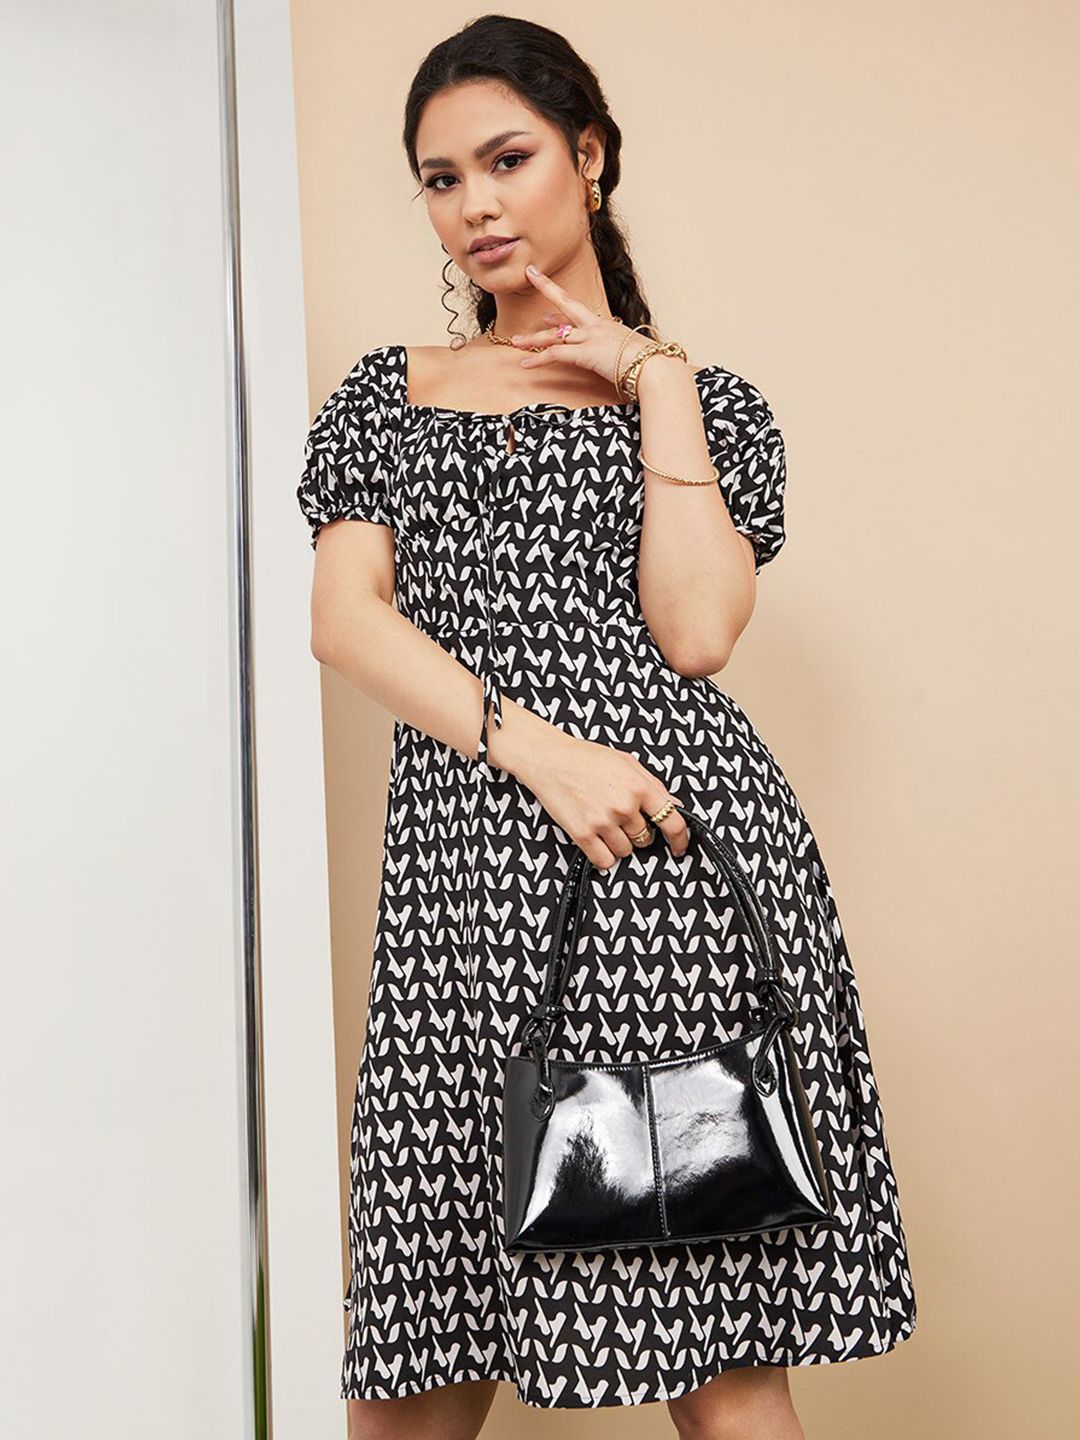 Styli Black Off-Shoulder Midi Dress Price in India